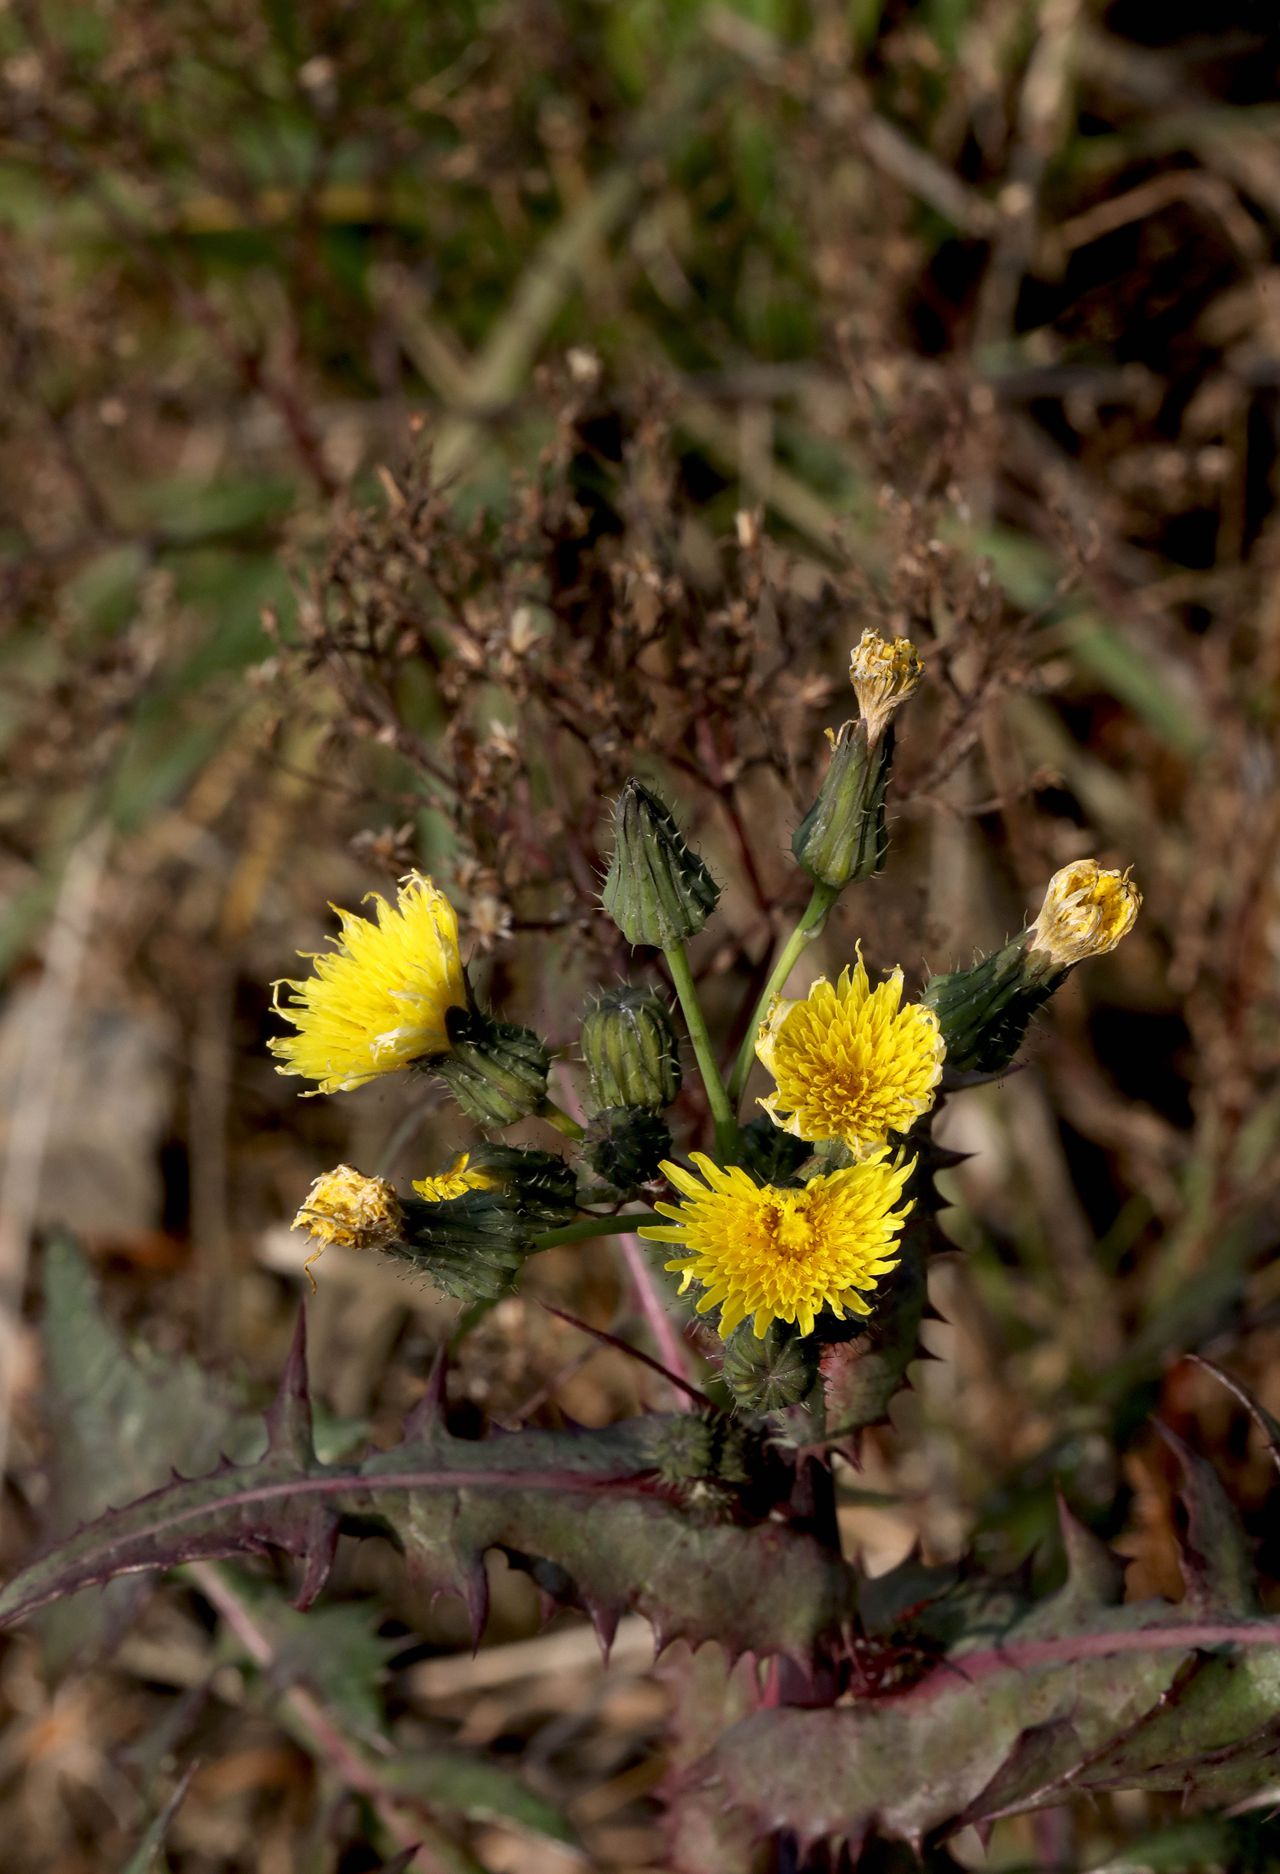 续断菊刺（刺菜，恶鸡婆），遍布野外的常见草本植物续断菊刺花朵图片图片